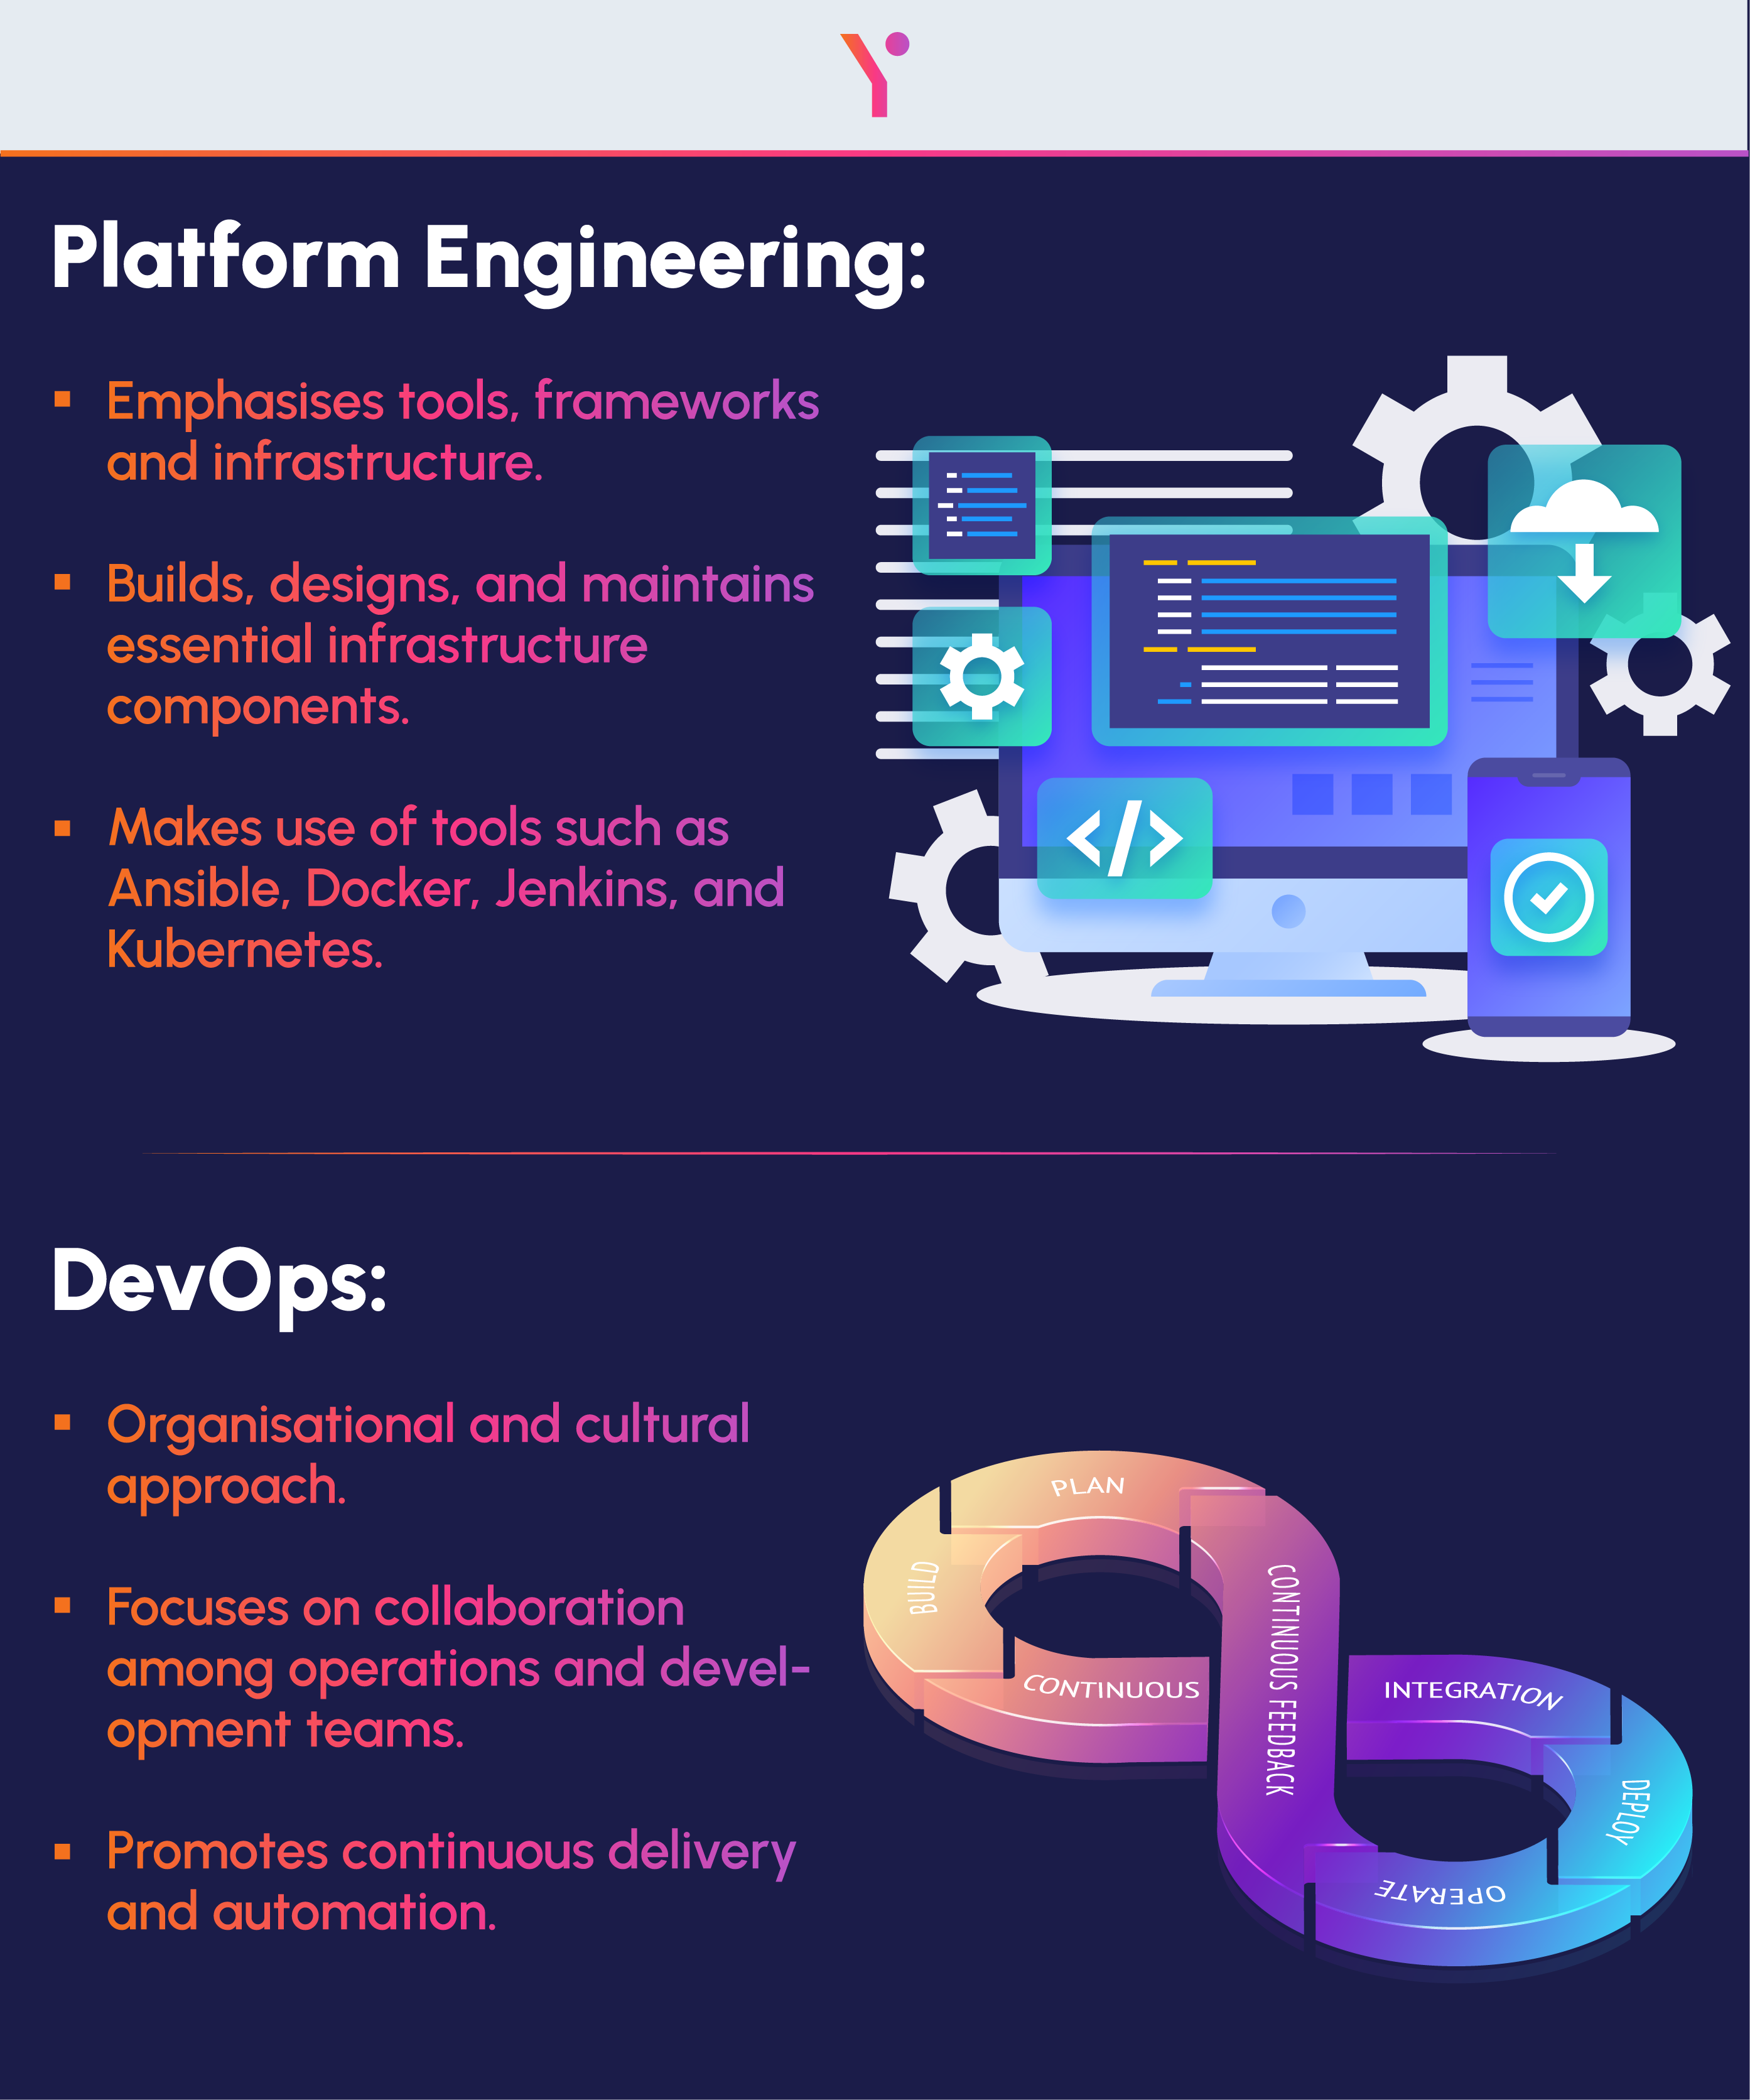 Key pointers of platform engineering vs devops in pictorial form